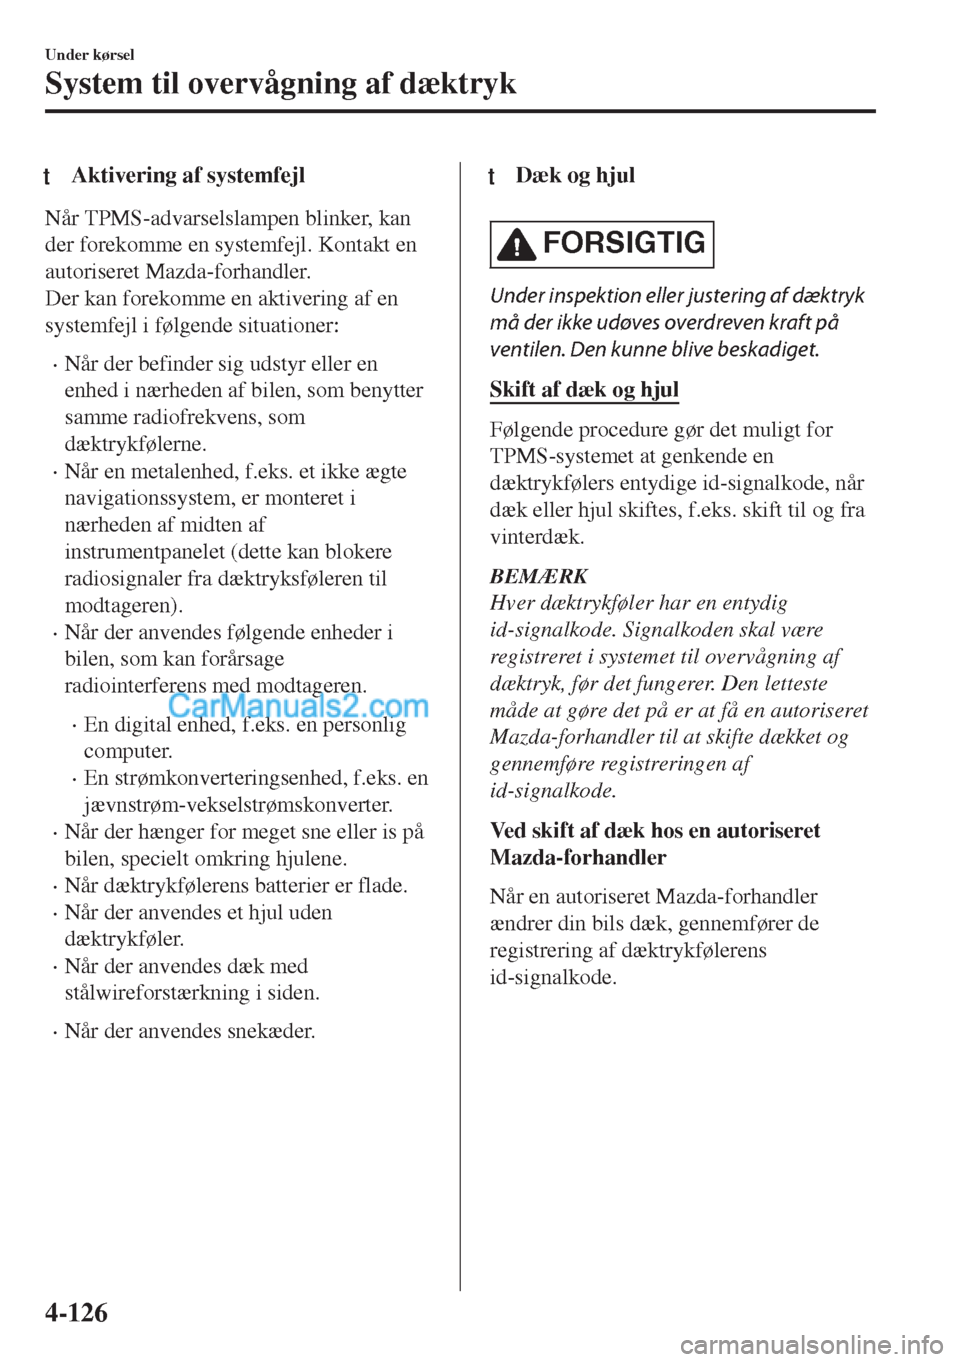 MAZDA MODEL MX-5 2017  Instruktionsbog (in Danish) tAktivering af systemfejl
Når TPMS-advarselslampen blinker, kan
der forekomme en systemfejl. Kontakt en
autoriseret Mazda-forhandler.
Der kan forekomme en aktivering af en
systemfejl i følgende situ